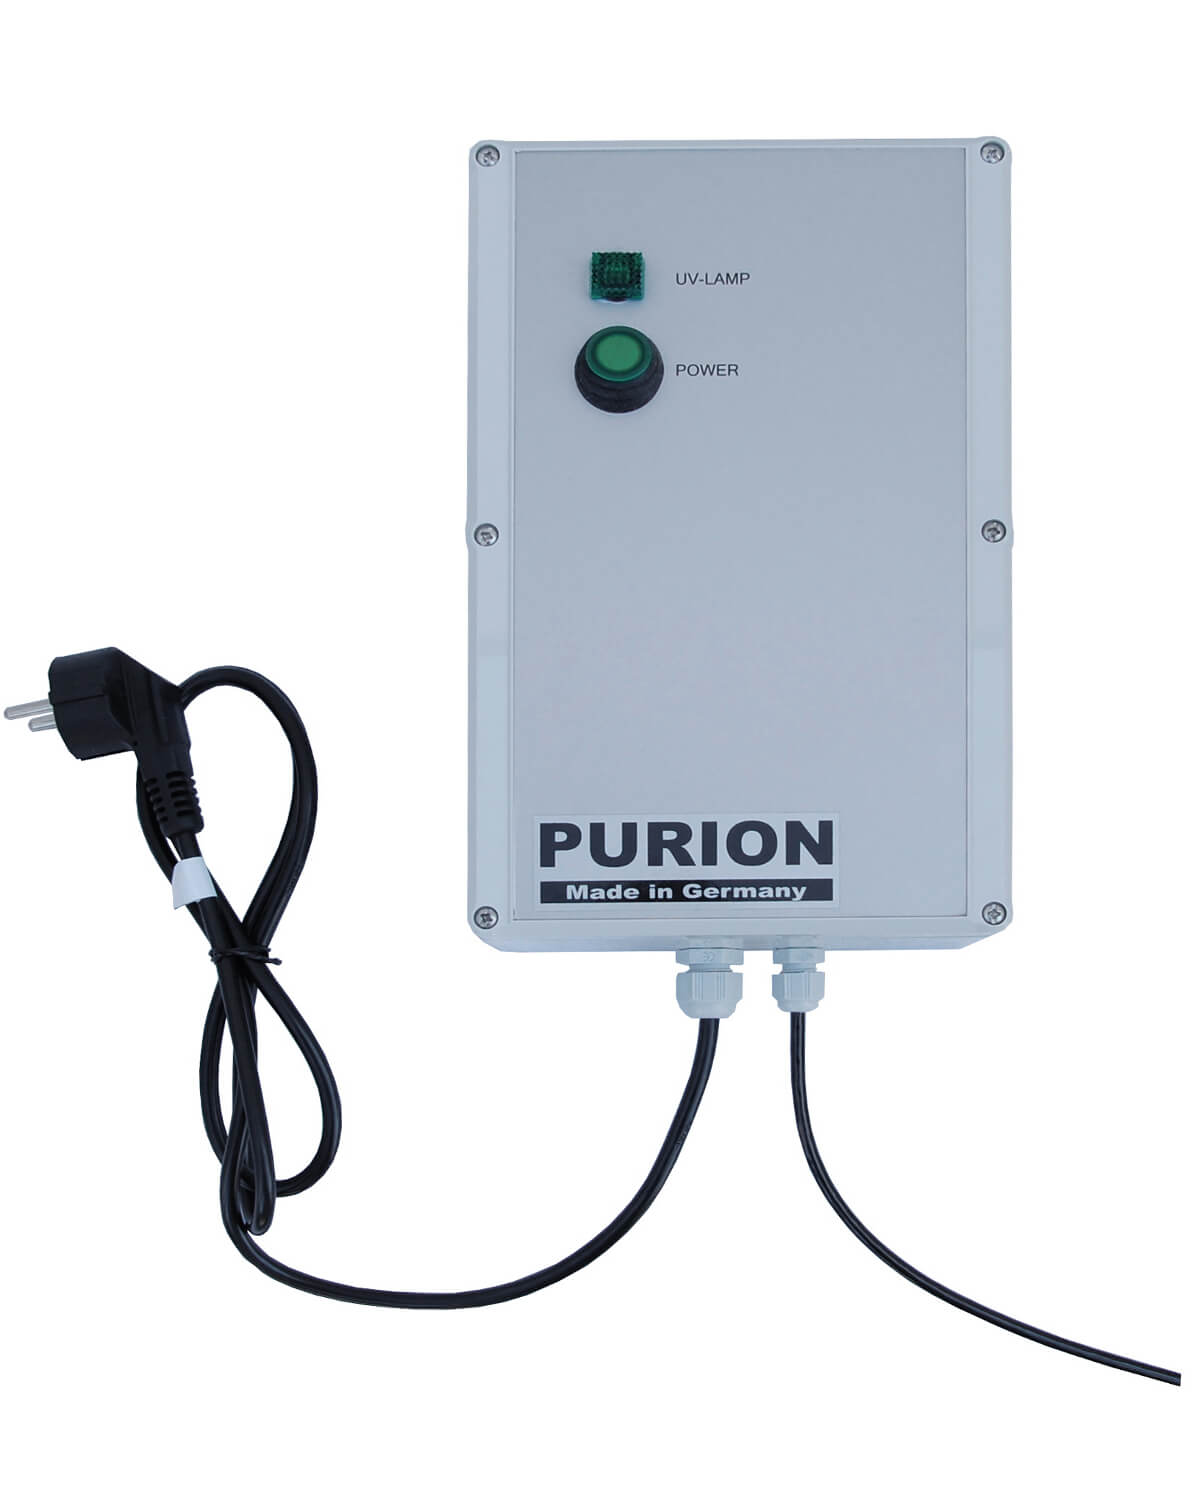 Die PURION GmbH bietet mit ihrem Salzwasserpool und der UV-C-Desinfektionstechnologie eine zuverlässige und effiziente Reinigungslösung. Erleben Sie die Vorteile von gereinigtem Wasser mit dem fortschrittlichen Reinigungssystem der PURION GmbH, dem PURION 2001 PVC-U Basic.